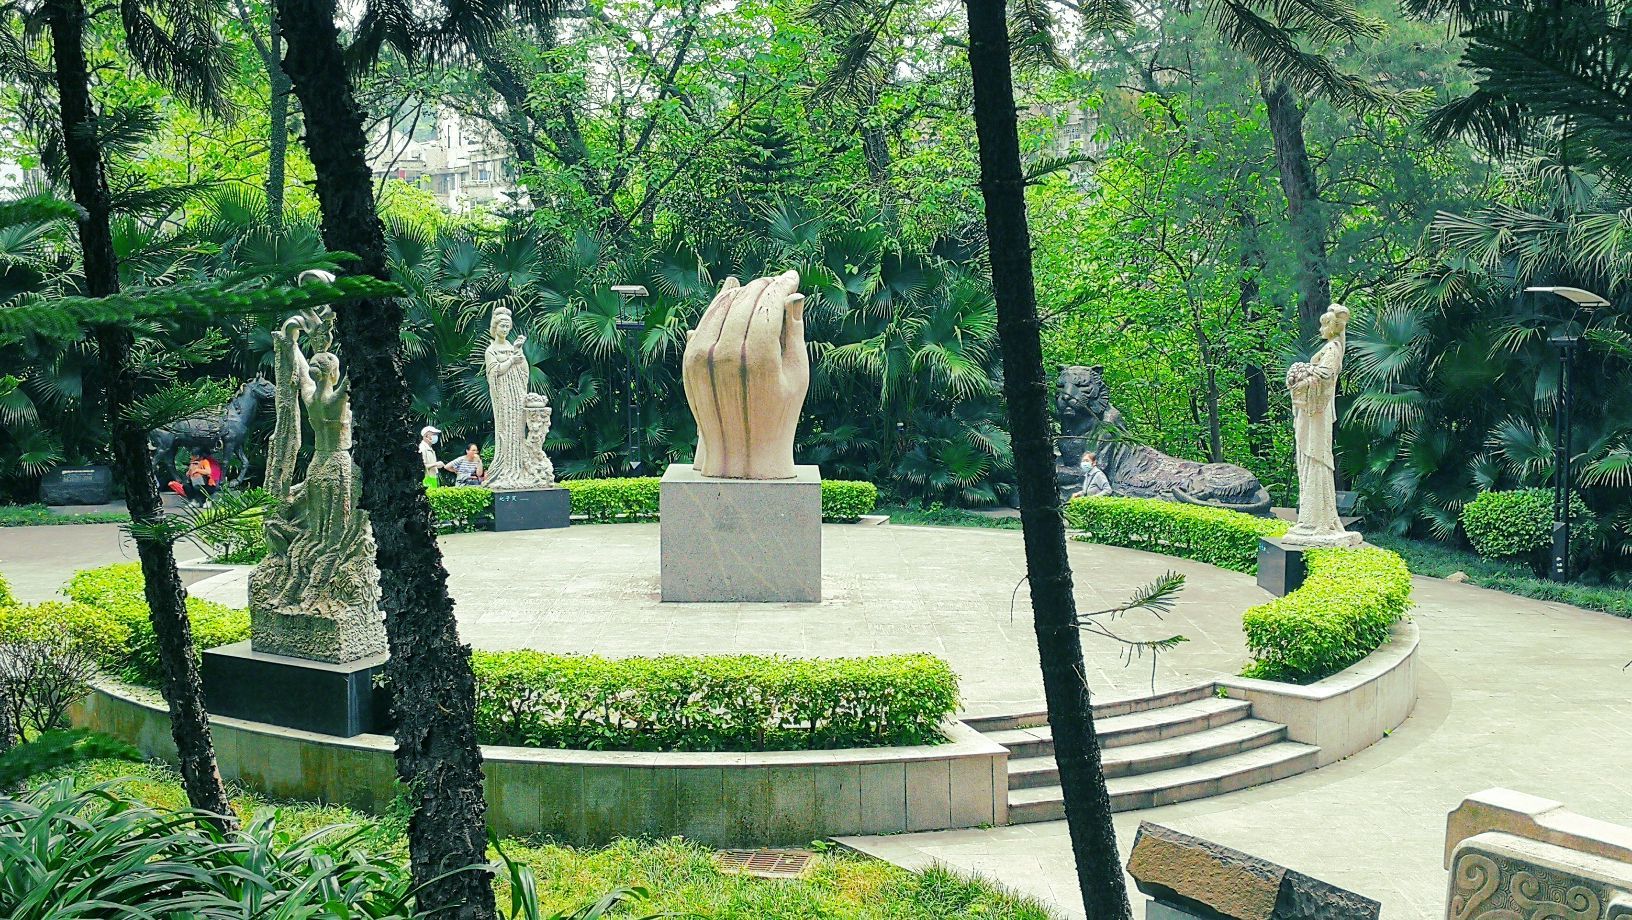 【携程攻略】广州雕塑公园景点,有趣的灵魂在跳舞